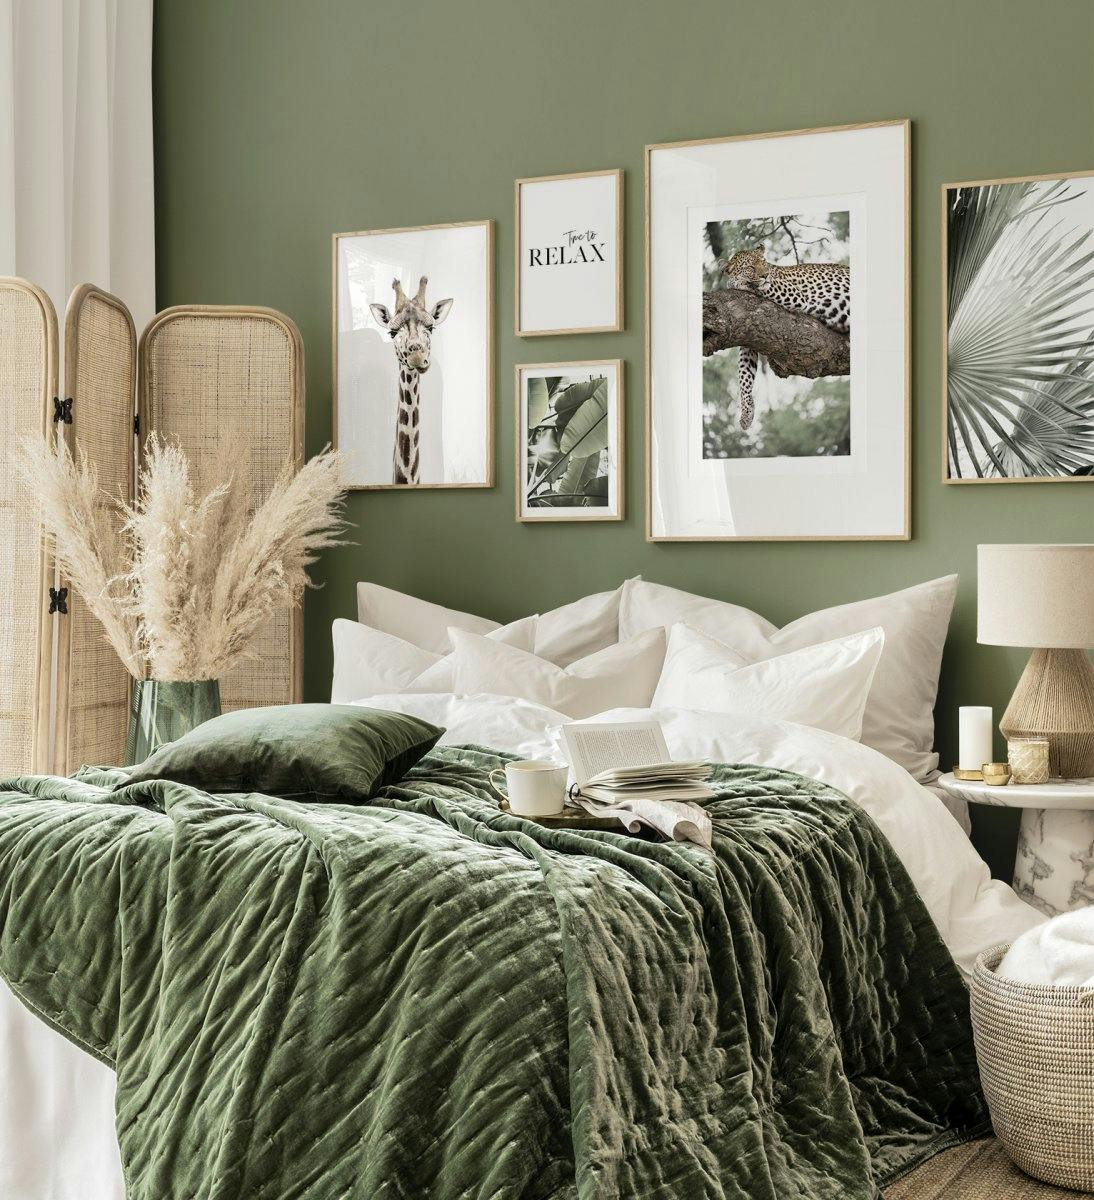 リビングルーム用のオーク材のフレームを備えた緑の風景と自然のギャラリーの壁